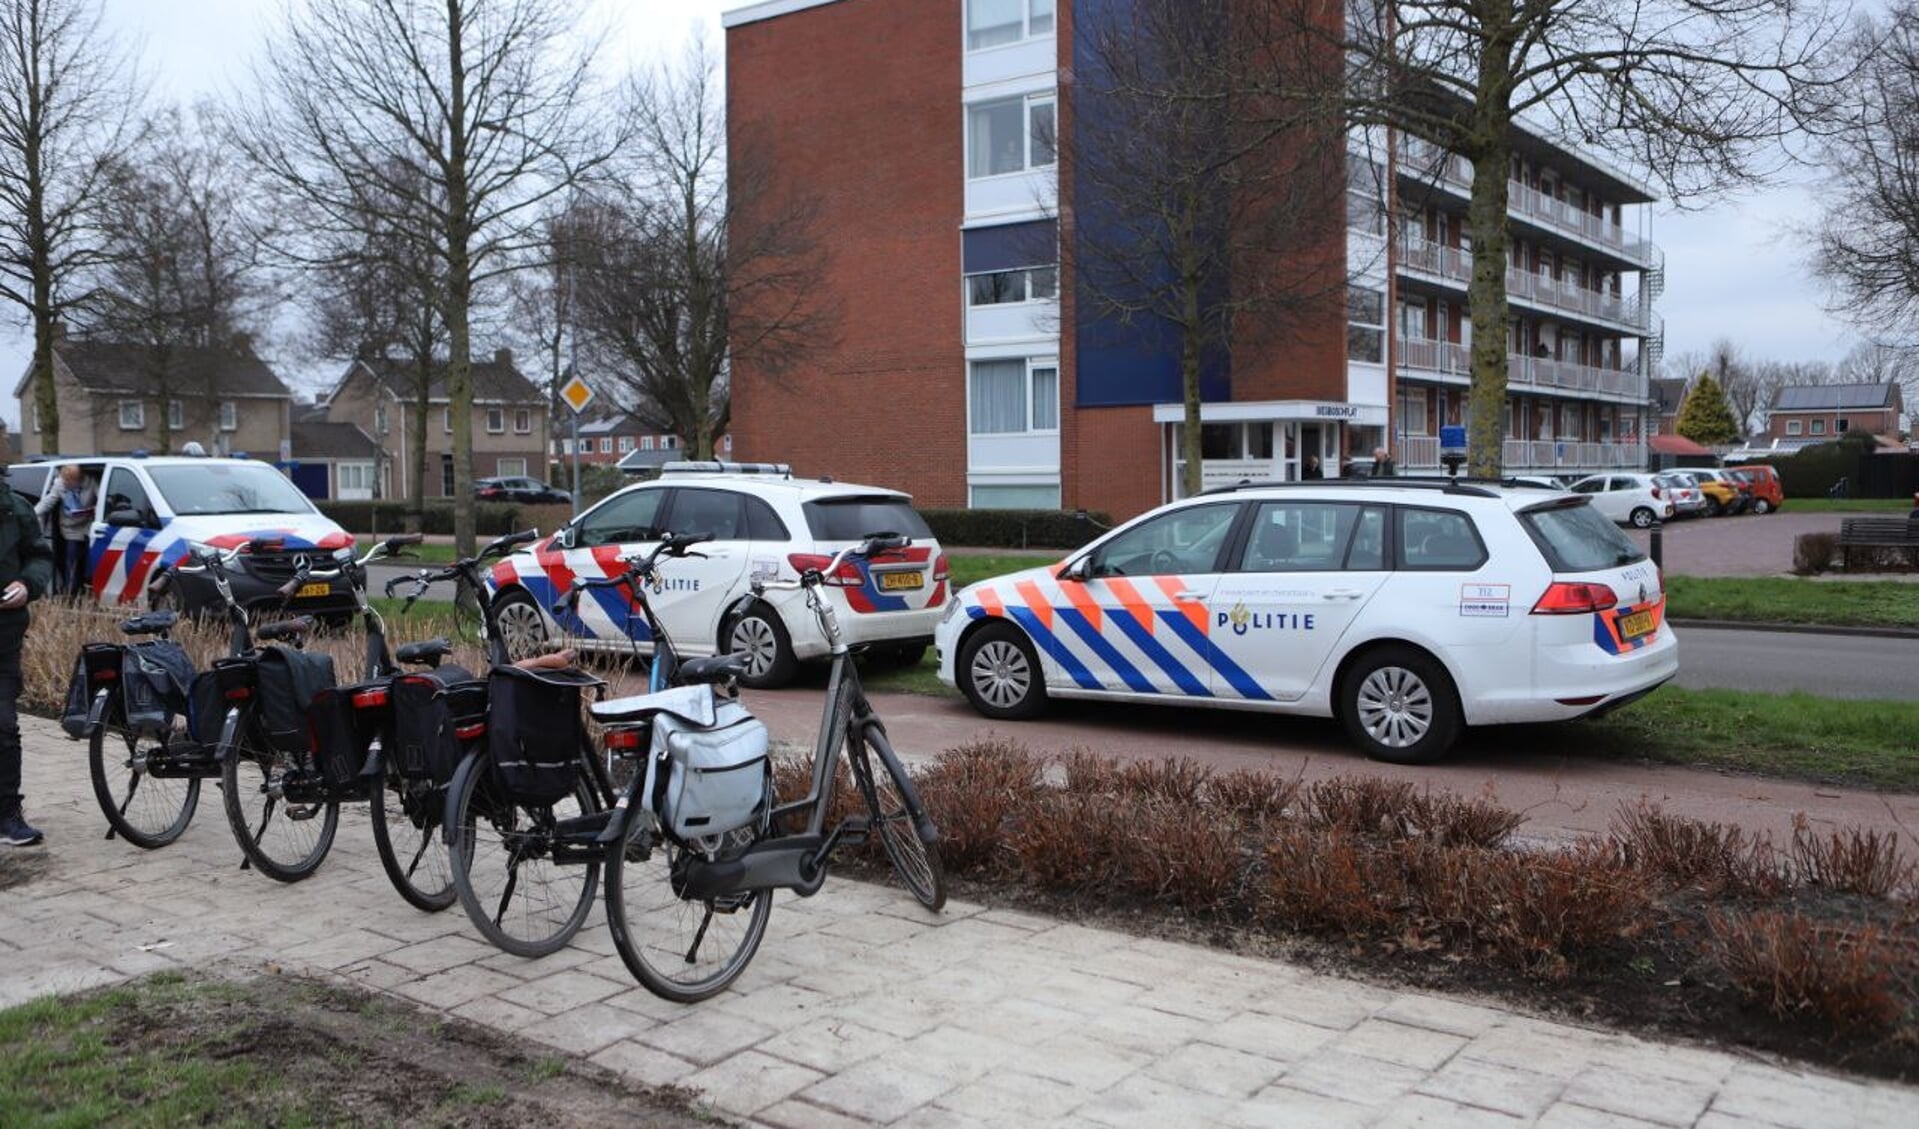 In de kelderbox werden meerdere fietsen aangetroffen. (foto: Persbureau Groningen)